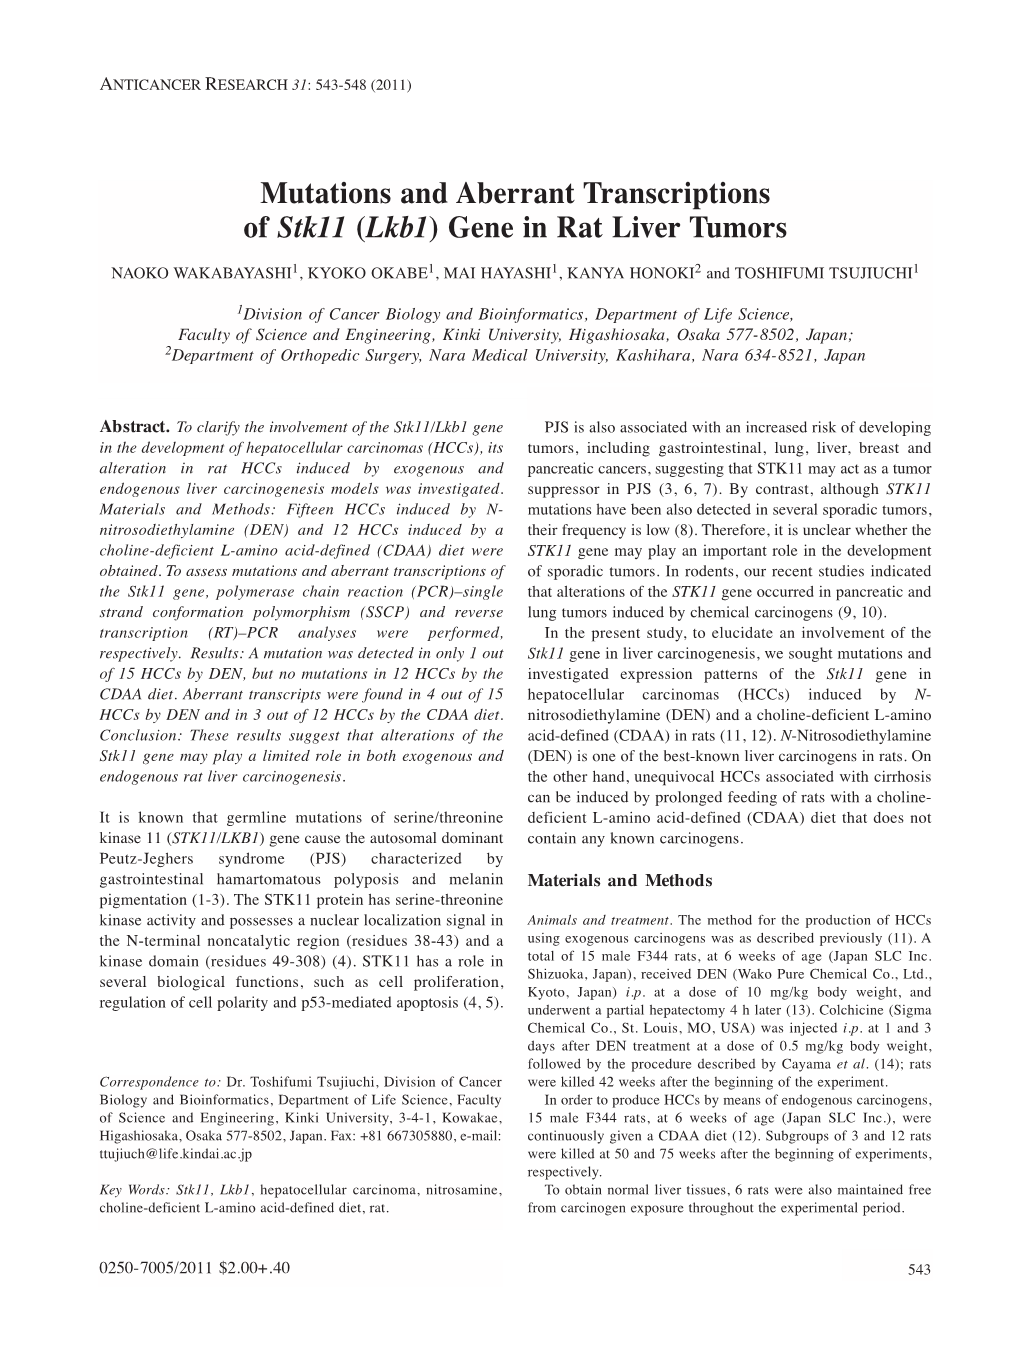 Lkb1) Gene in Rat Liver Tumors